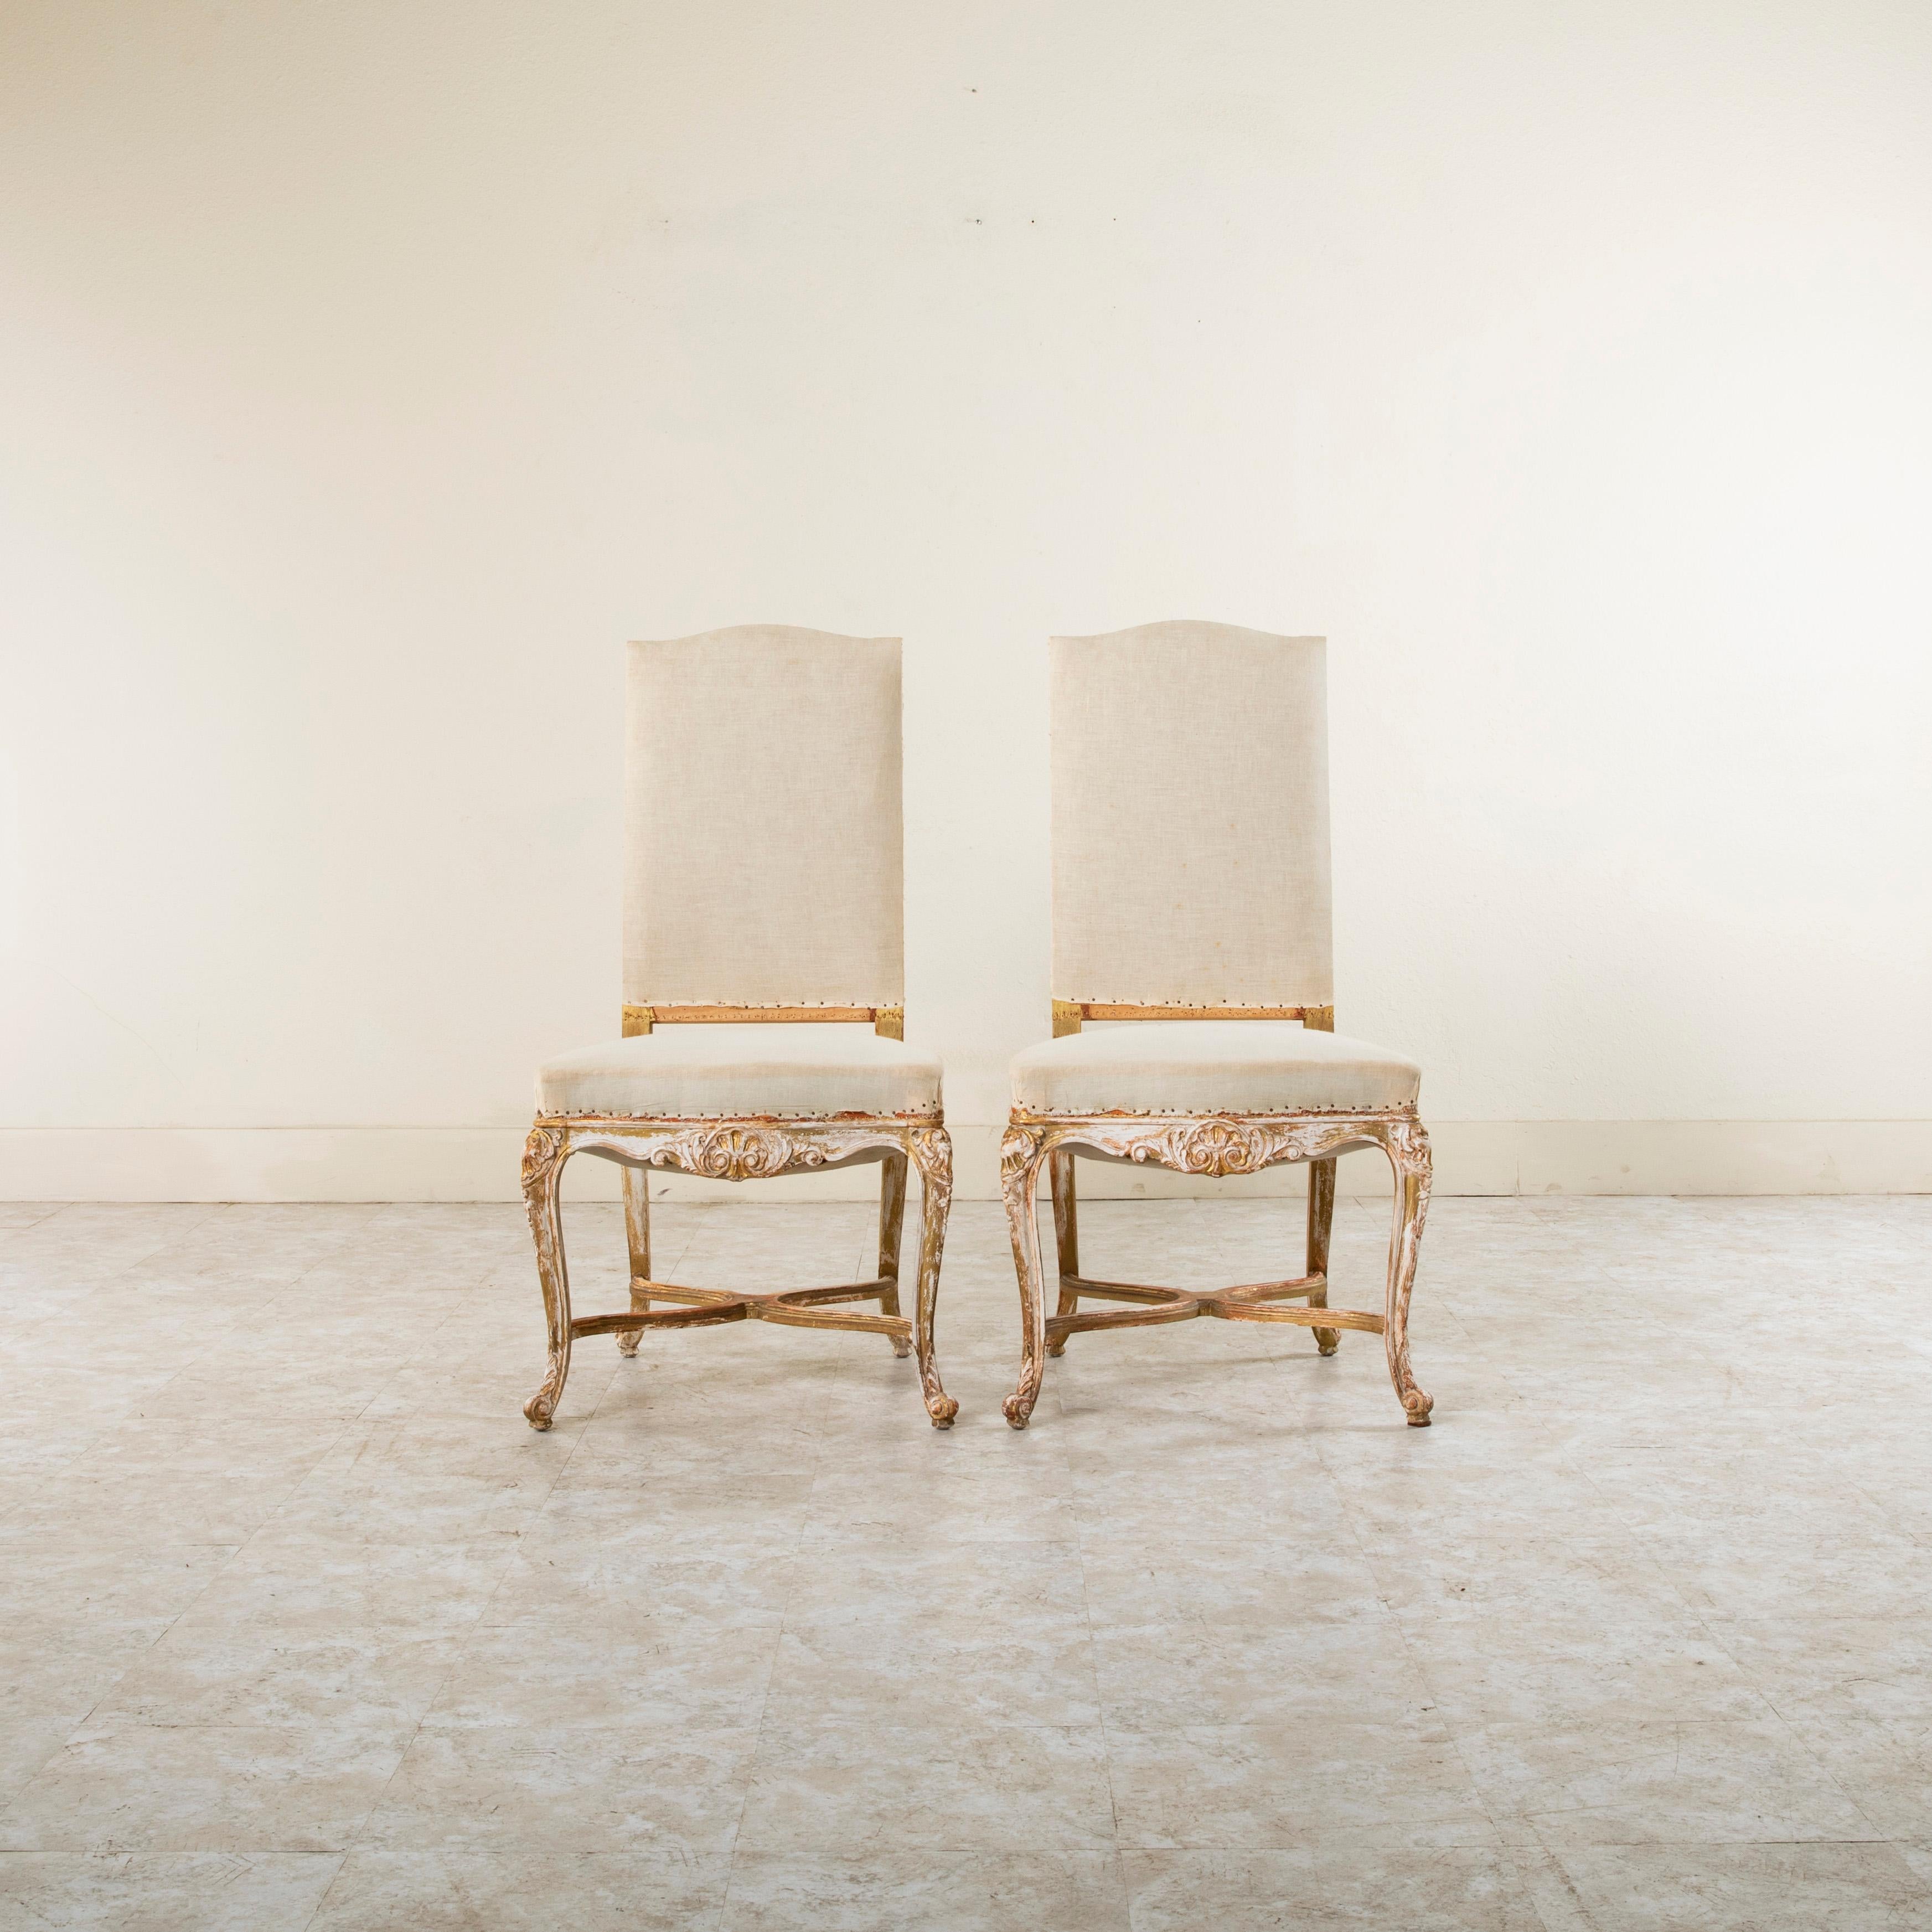 Dieses Paar bemalter französischer Beistellstühle im Regency-Stil aus der Jahrhundertwende zeichnet sich durch symmetrisch handgeschnitzte Mittelschalen aus, die von gadronierten Akanthusblättern an den Fronten und Seiten flankiert werden.